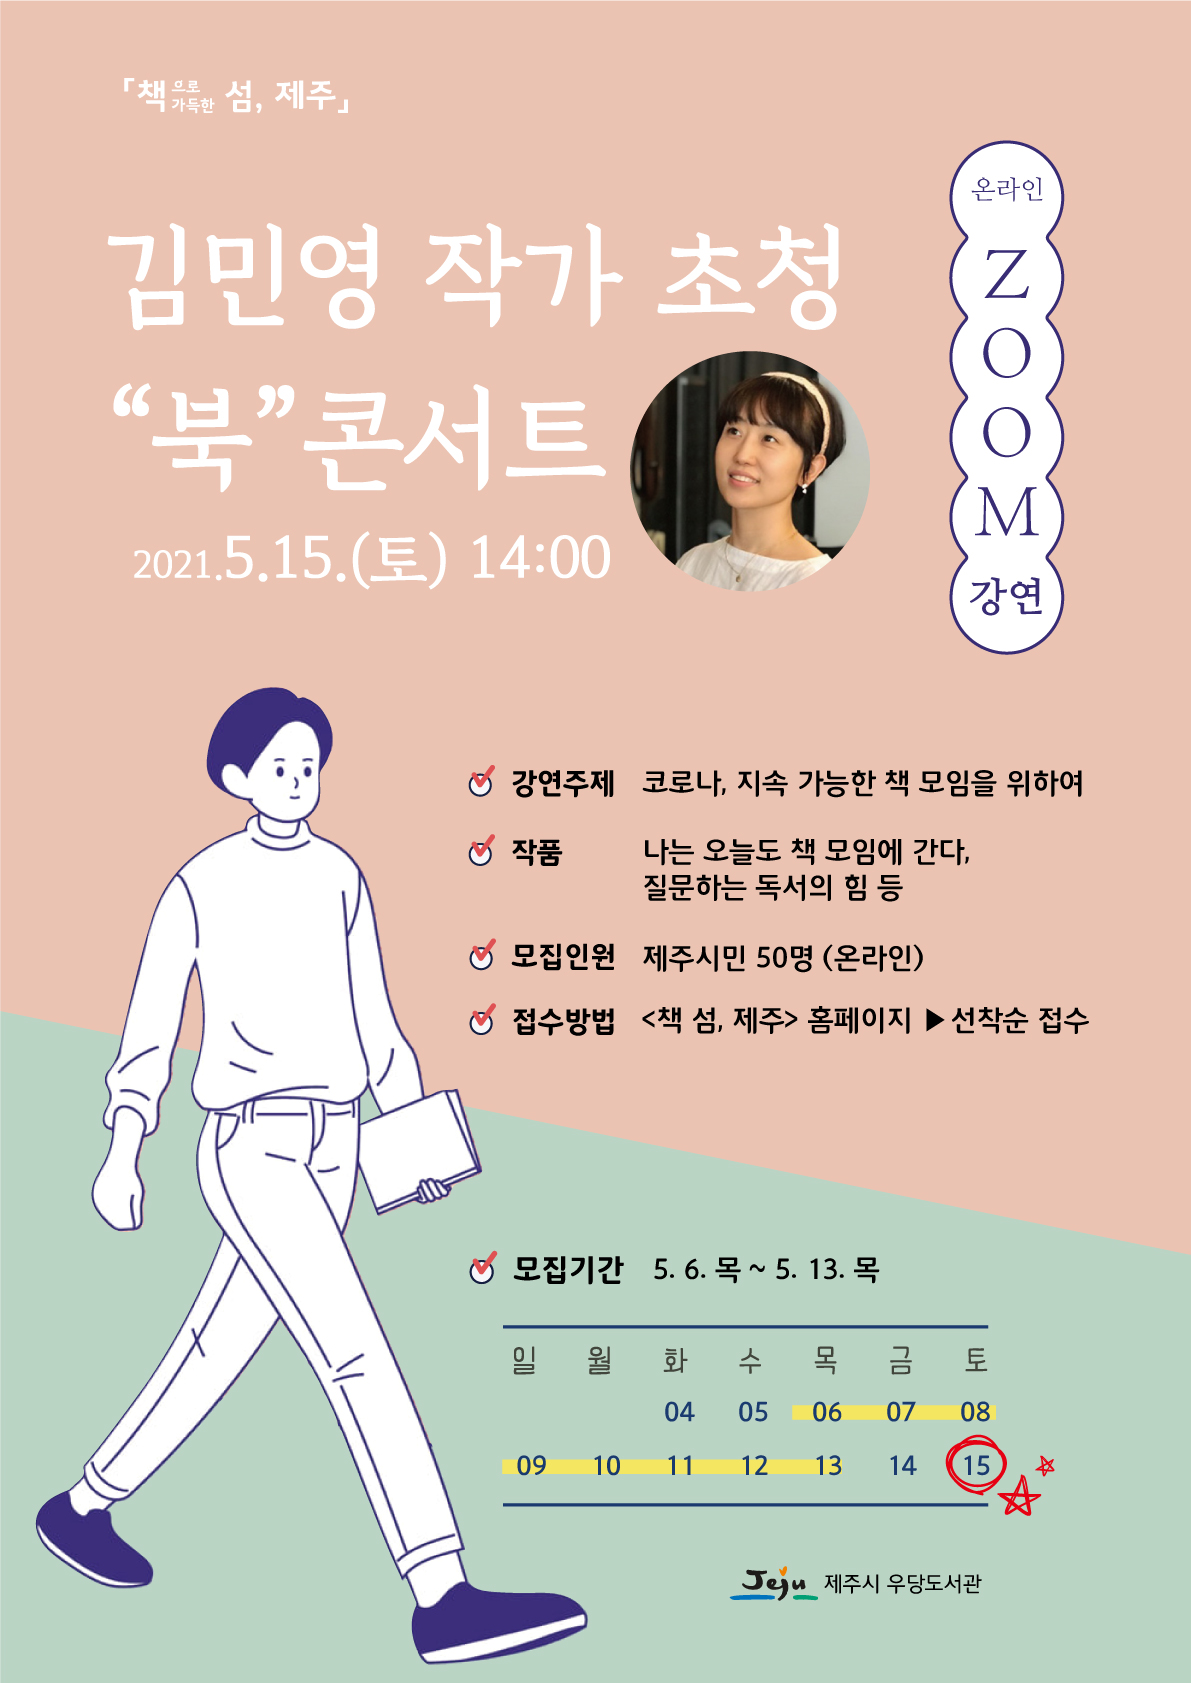 김민영 작가 초청 "북" 콘서트 온라인(ZOOM) 참여자 모집 안내